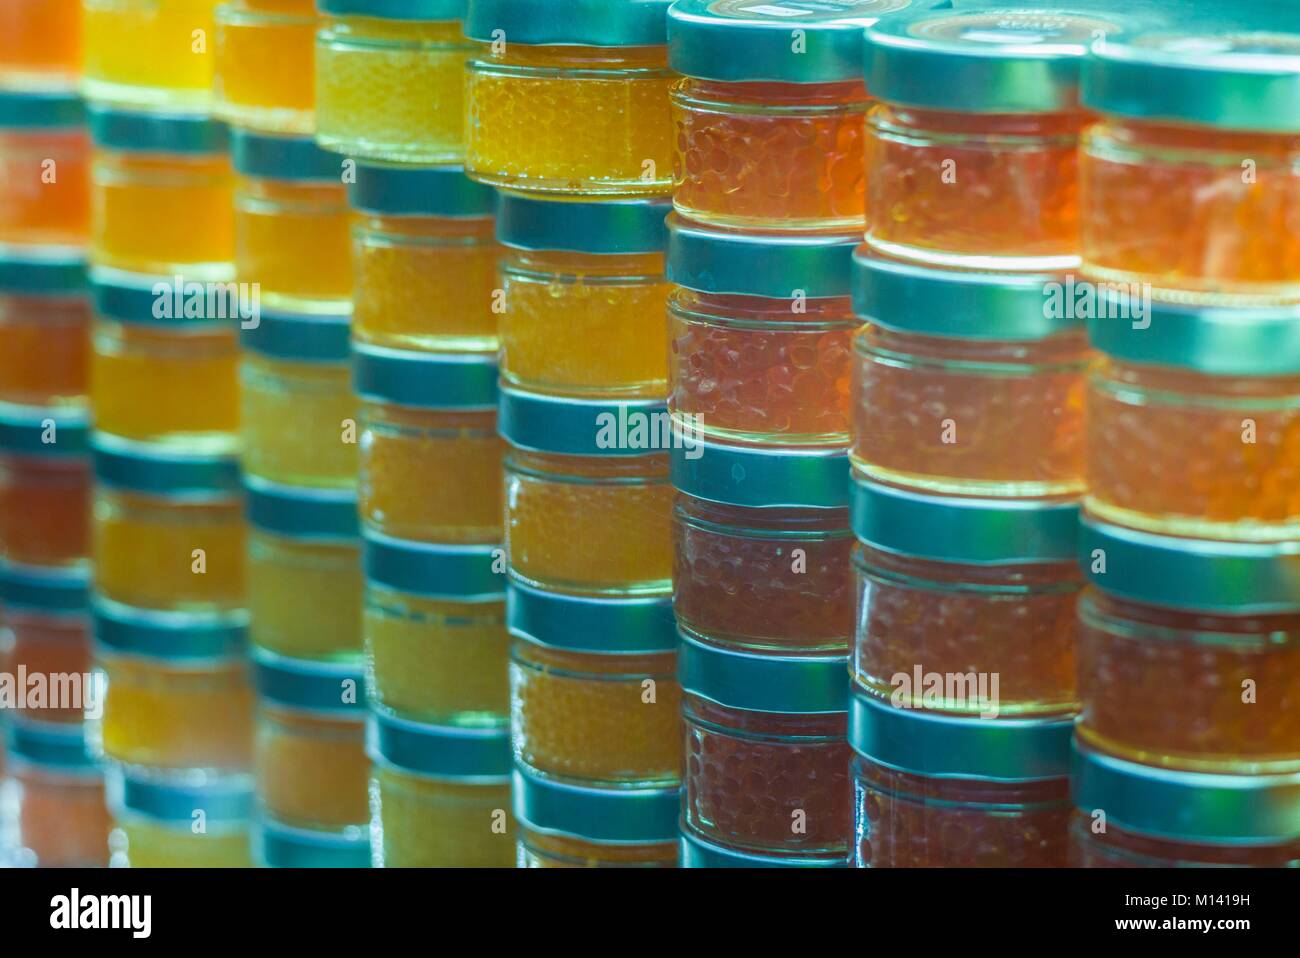 Austria, Viena, el Naschmarkt, el mercado de alimentos al aire libre, tarros de caviar Foto de stock